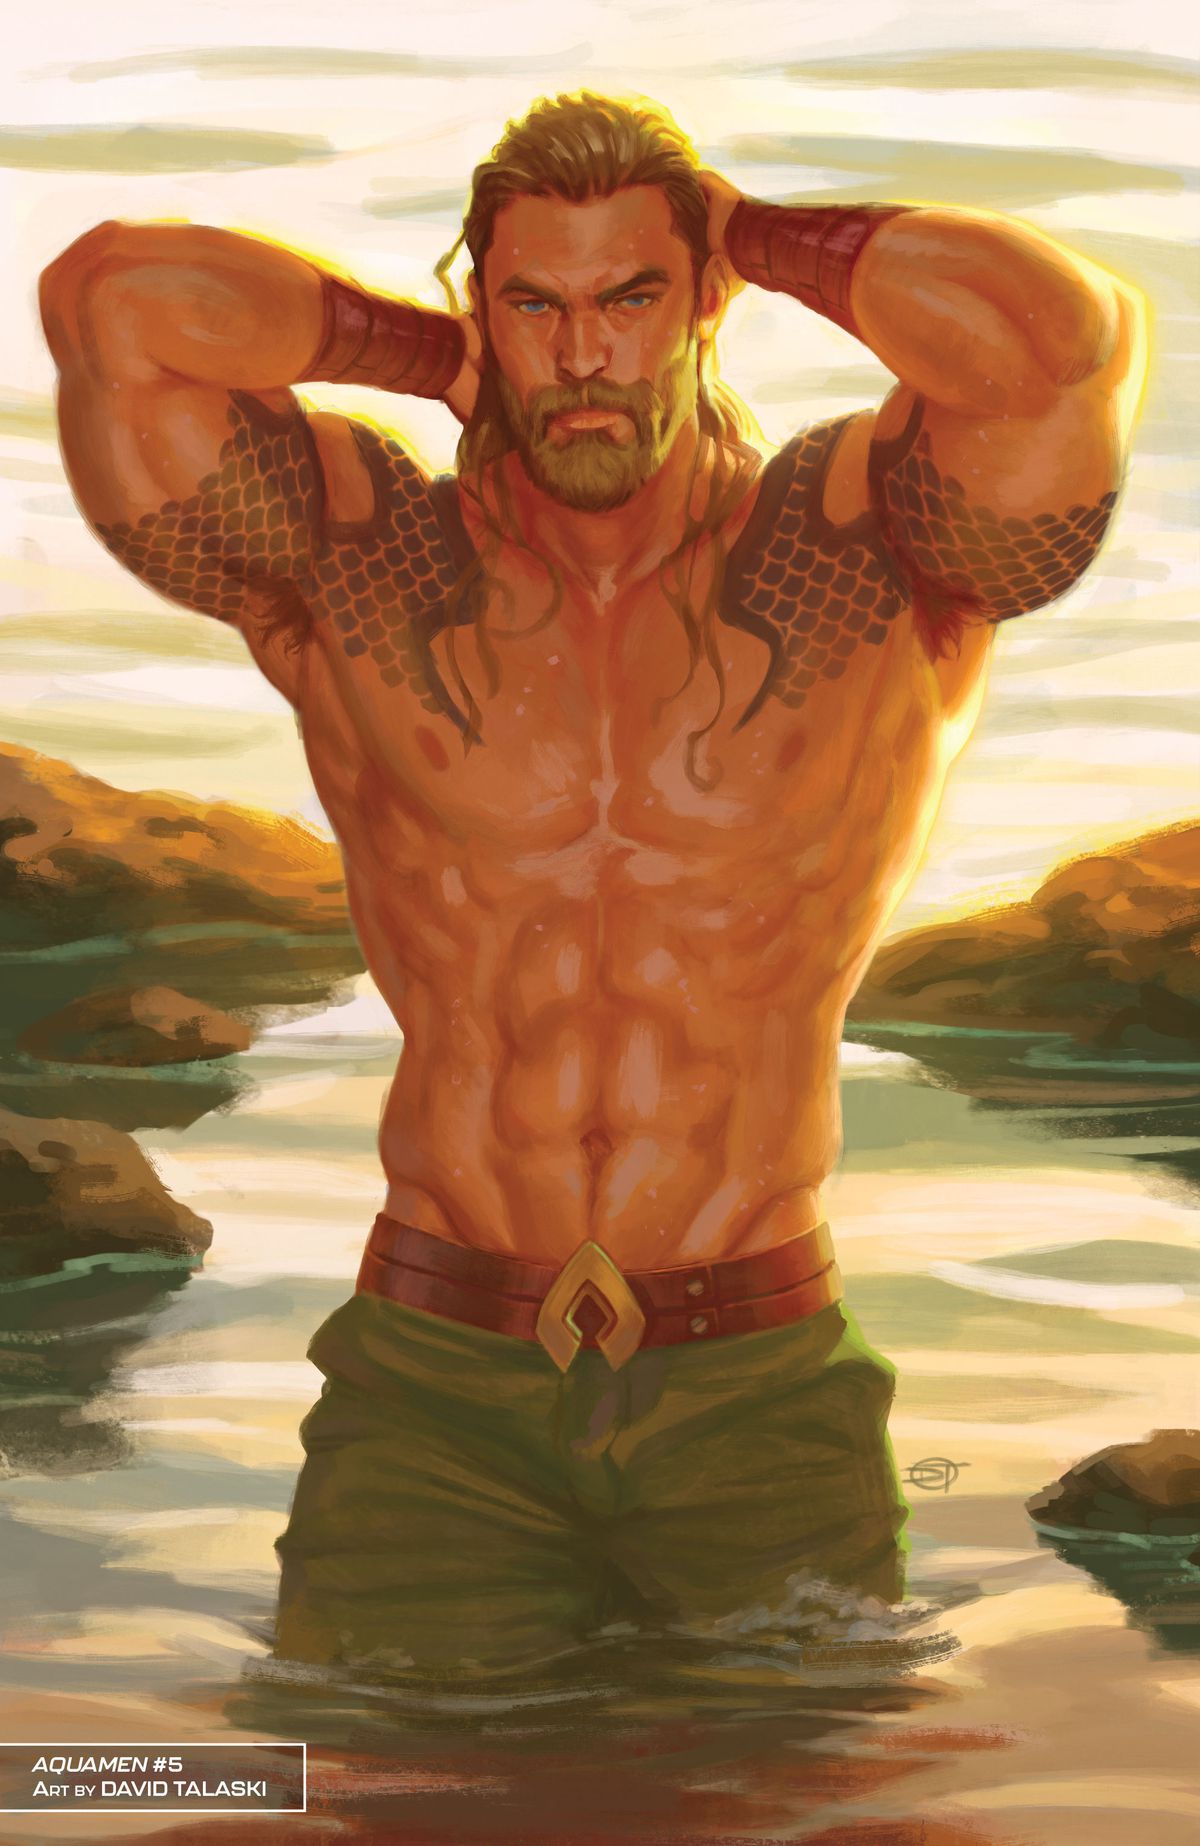 Aquaman repousse ses cheveux de son visage, accentuant ses nombreux muscles, alors qu'il se tient torse nu dans une mare, portant un pantalon vert et une ceinture avec une boucle en forme de son symbole. 